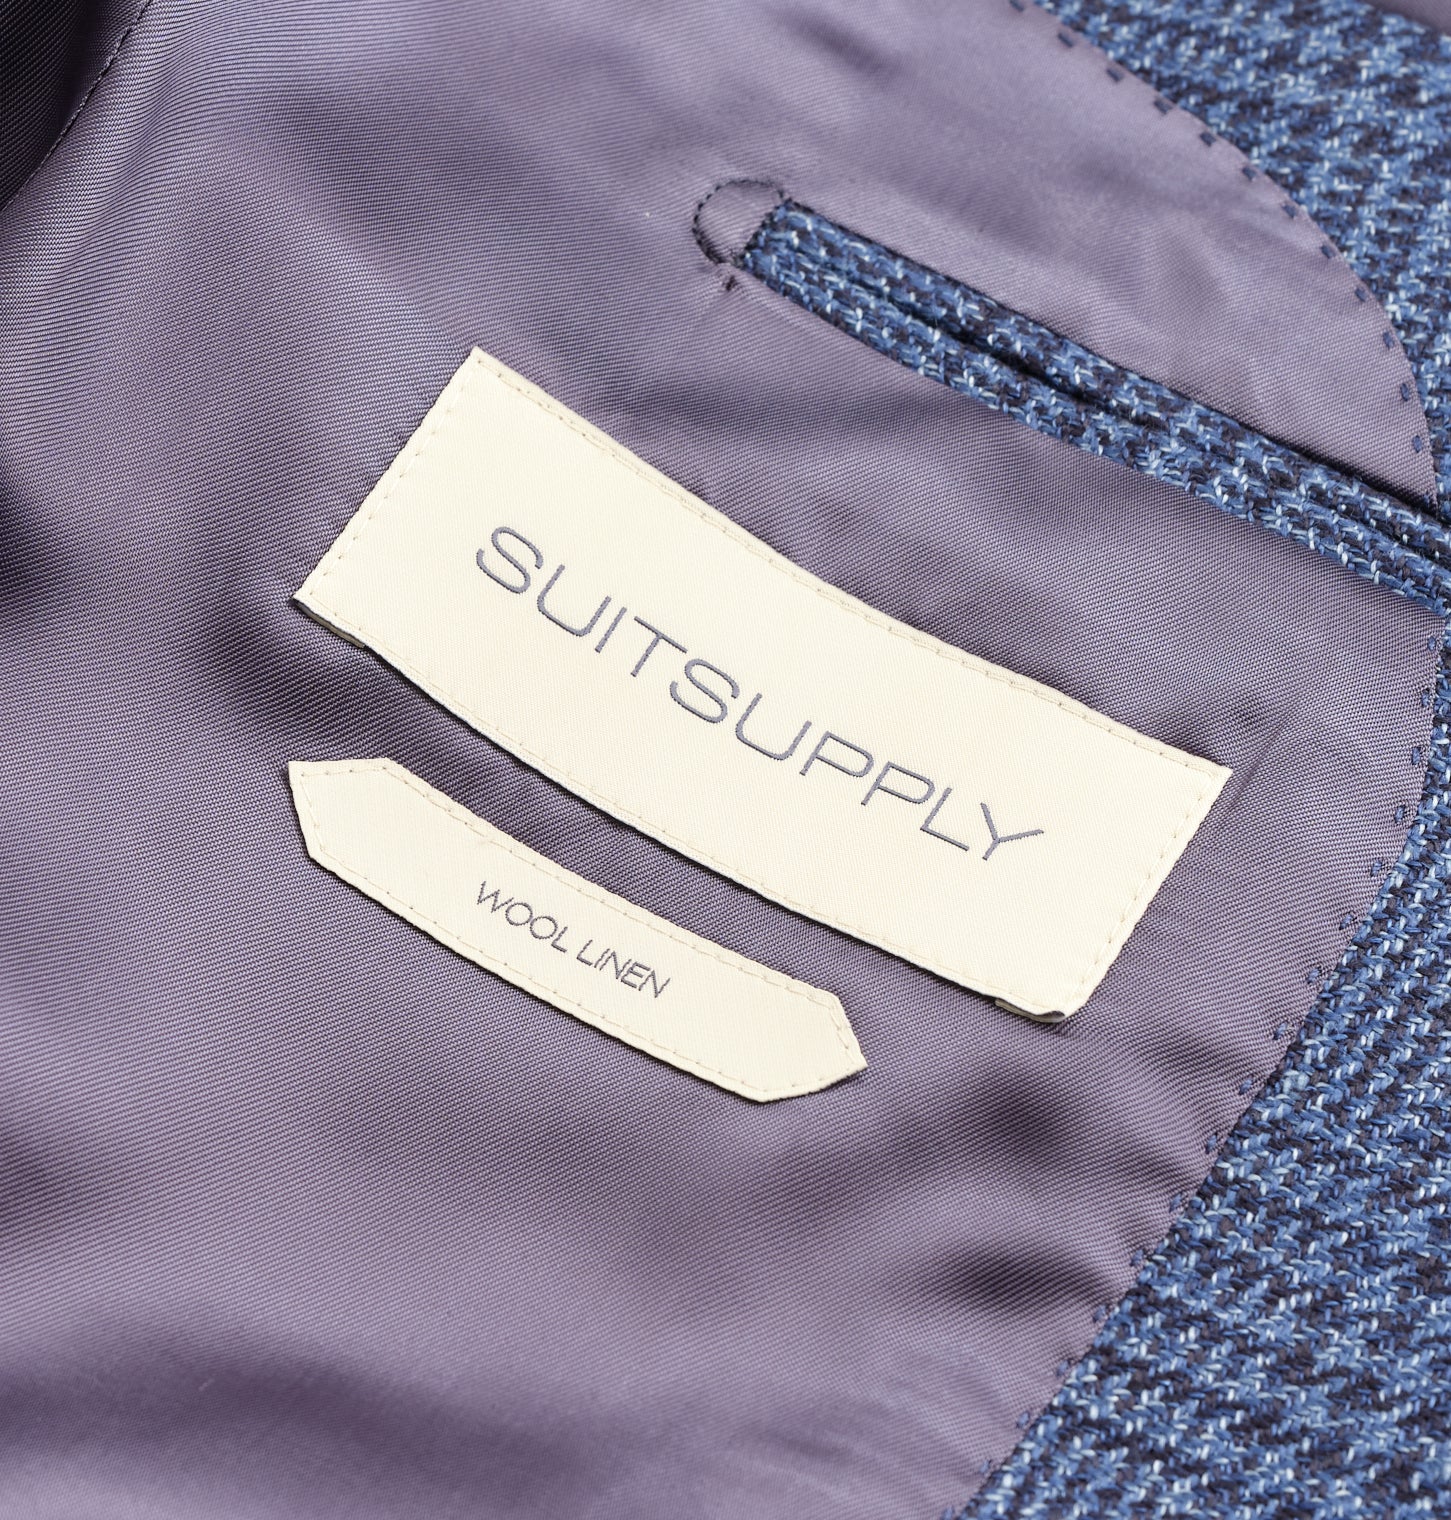 Wool suit Louis Vuitton Blue size 50 FR in Wool - 6412847